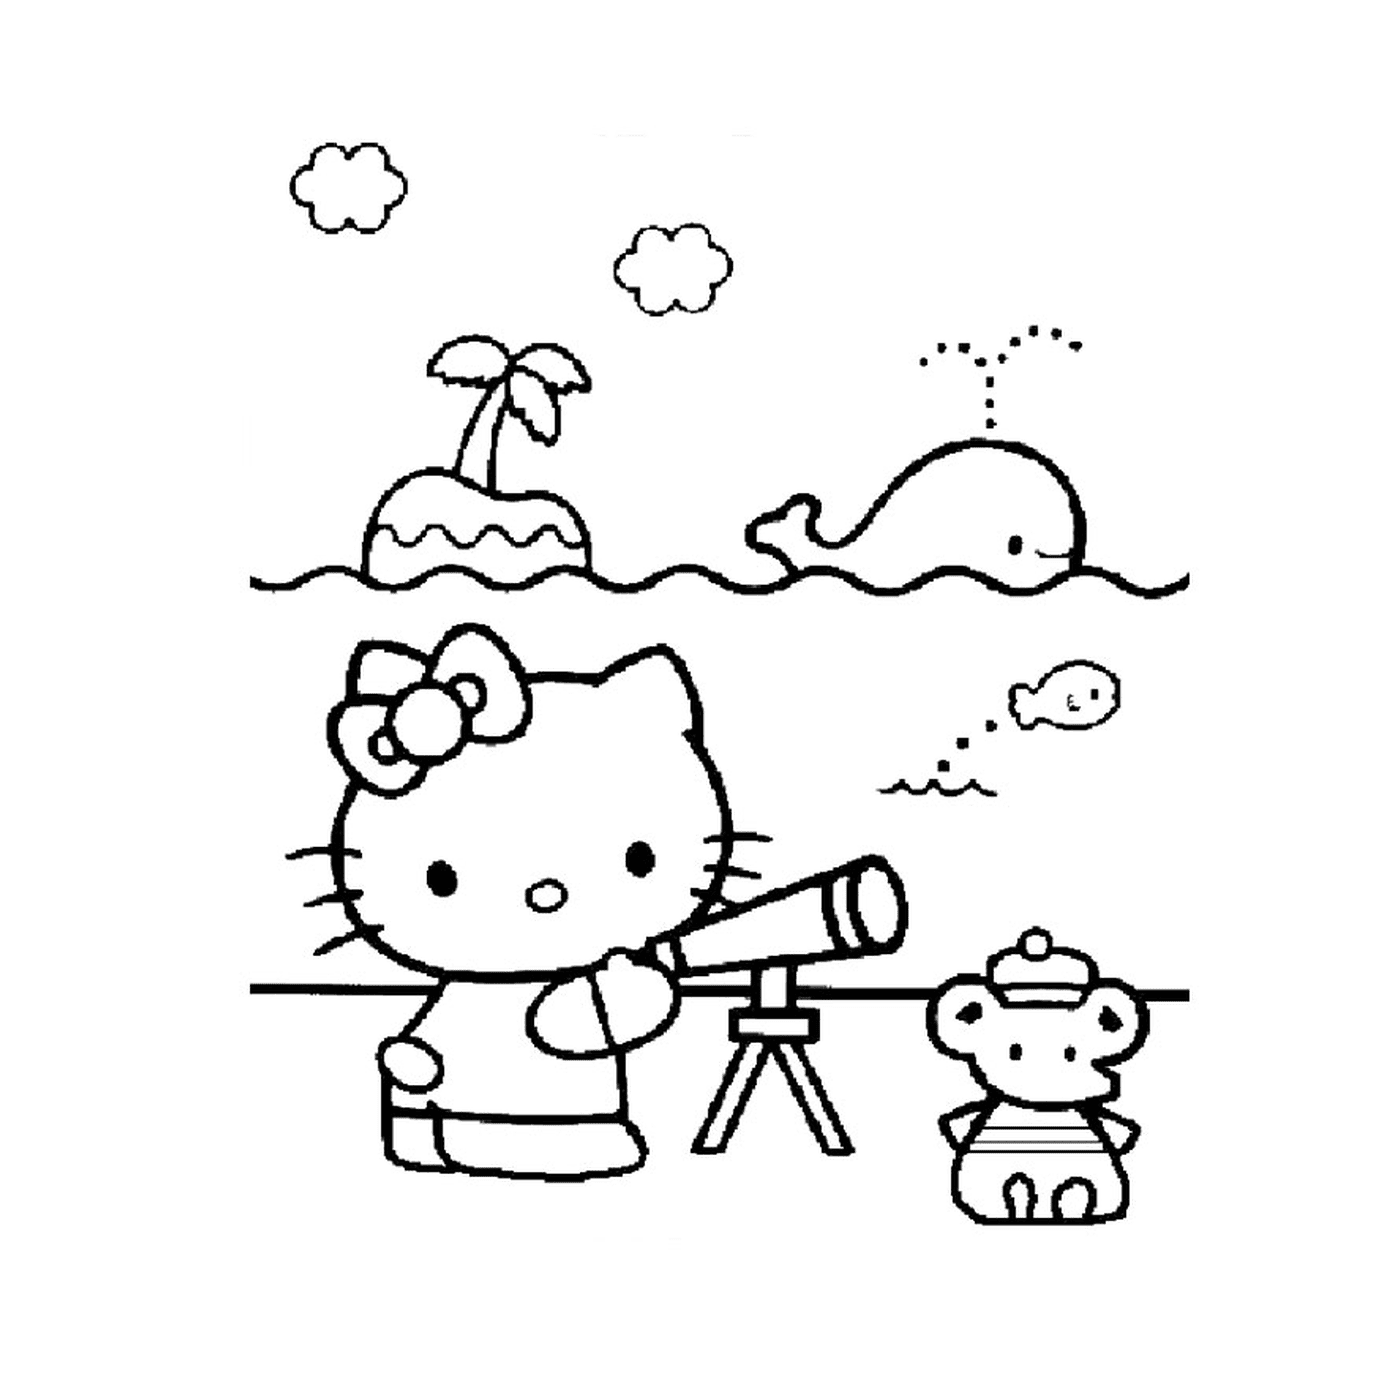  Hello Kitty olhando através de um telescópio para um ursinho de pelú 